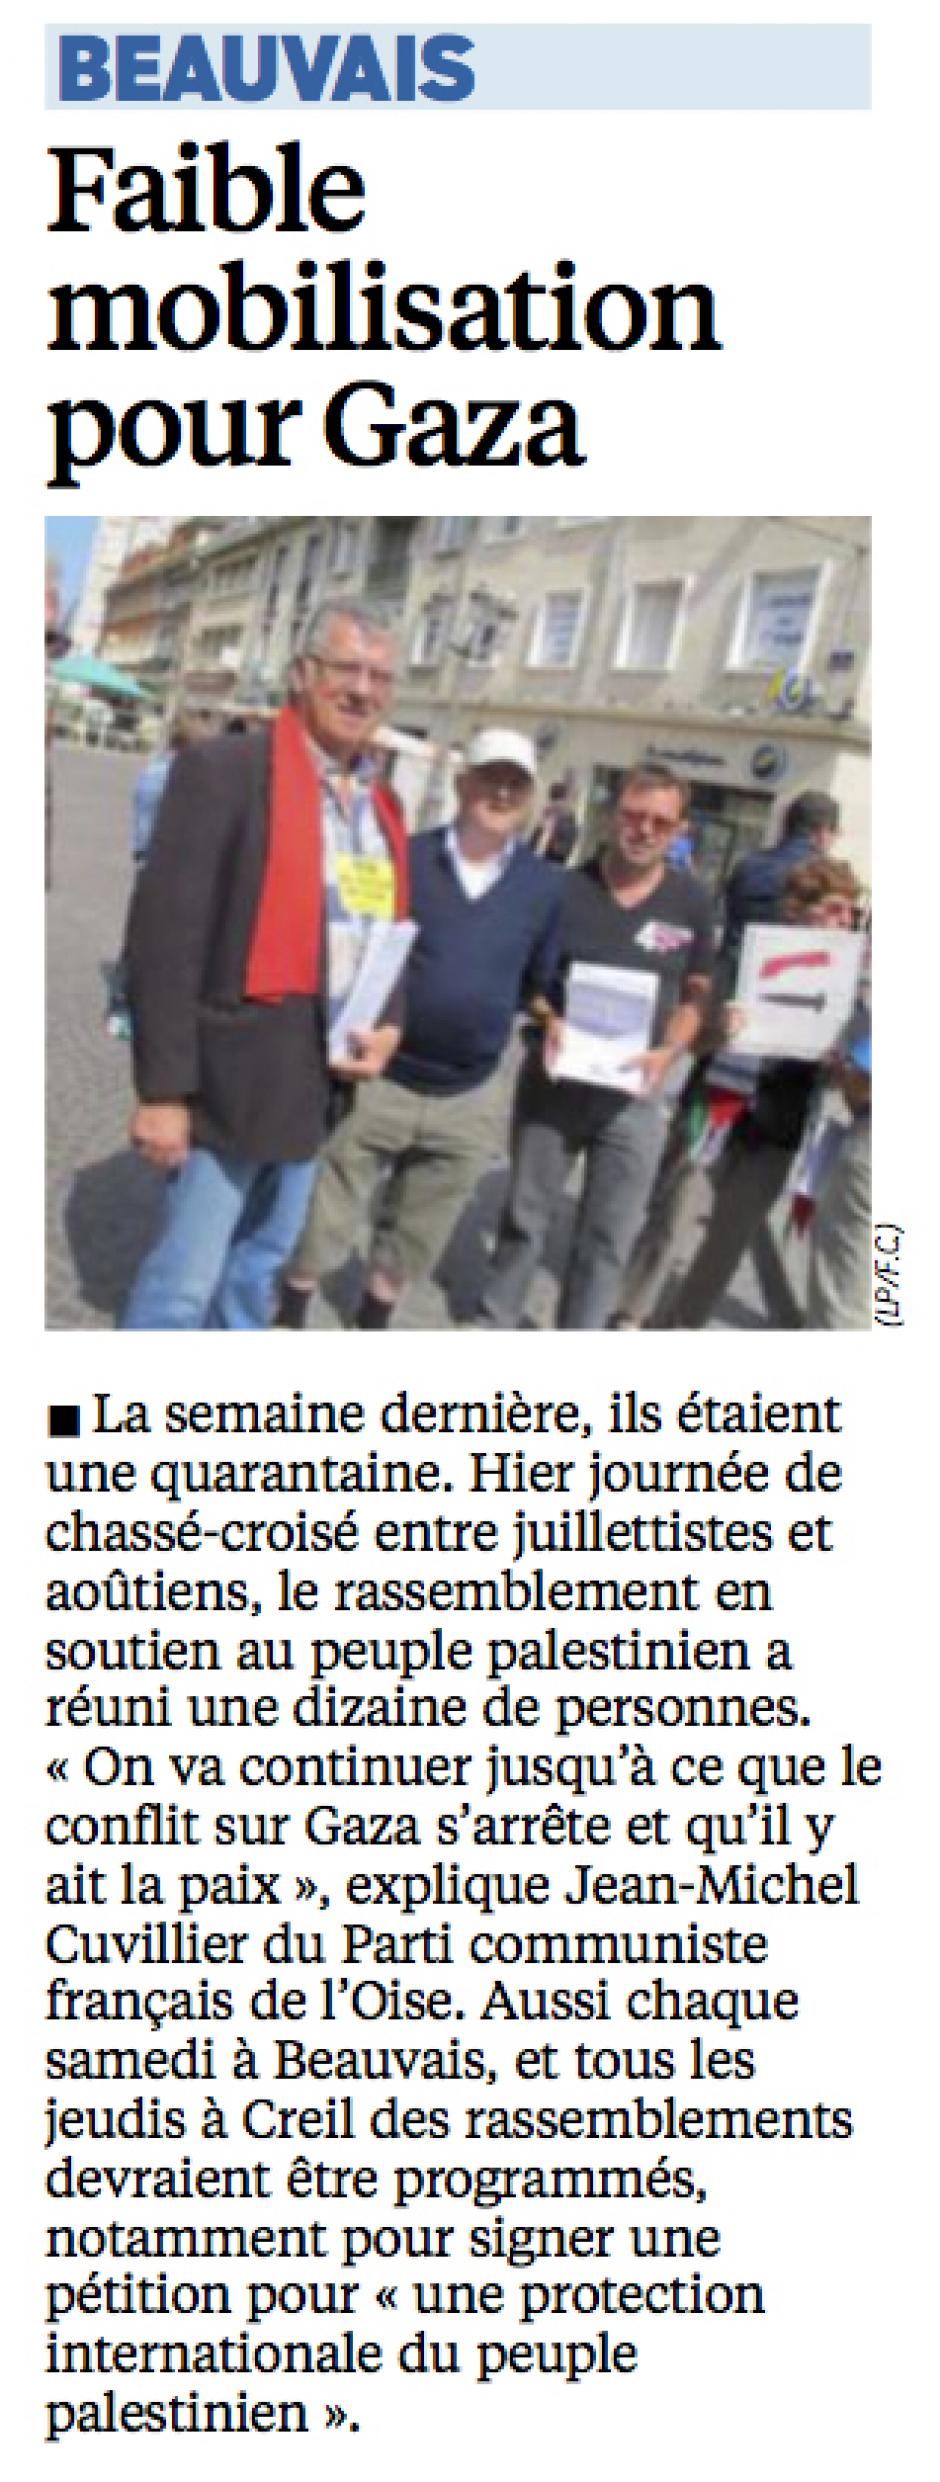 20140803-LeP-Beauvais-Faible mobilisation pour Gaza